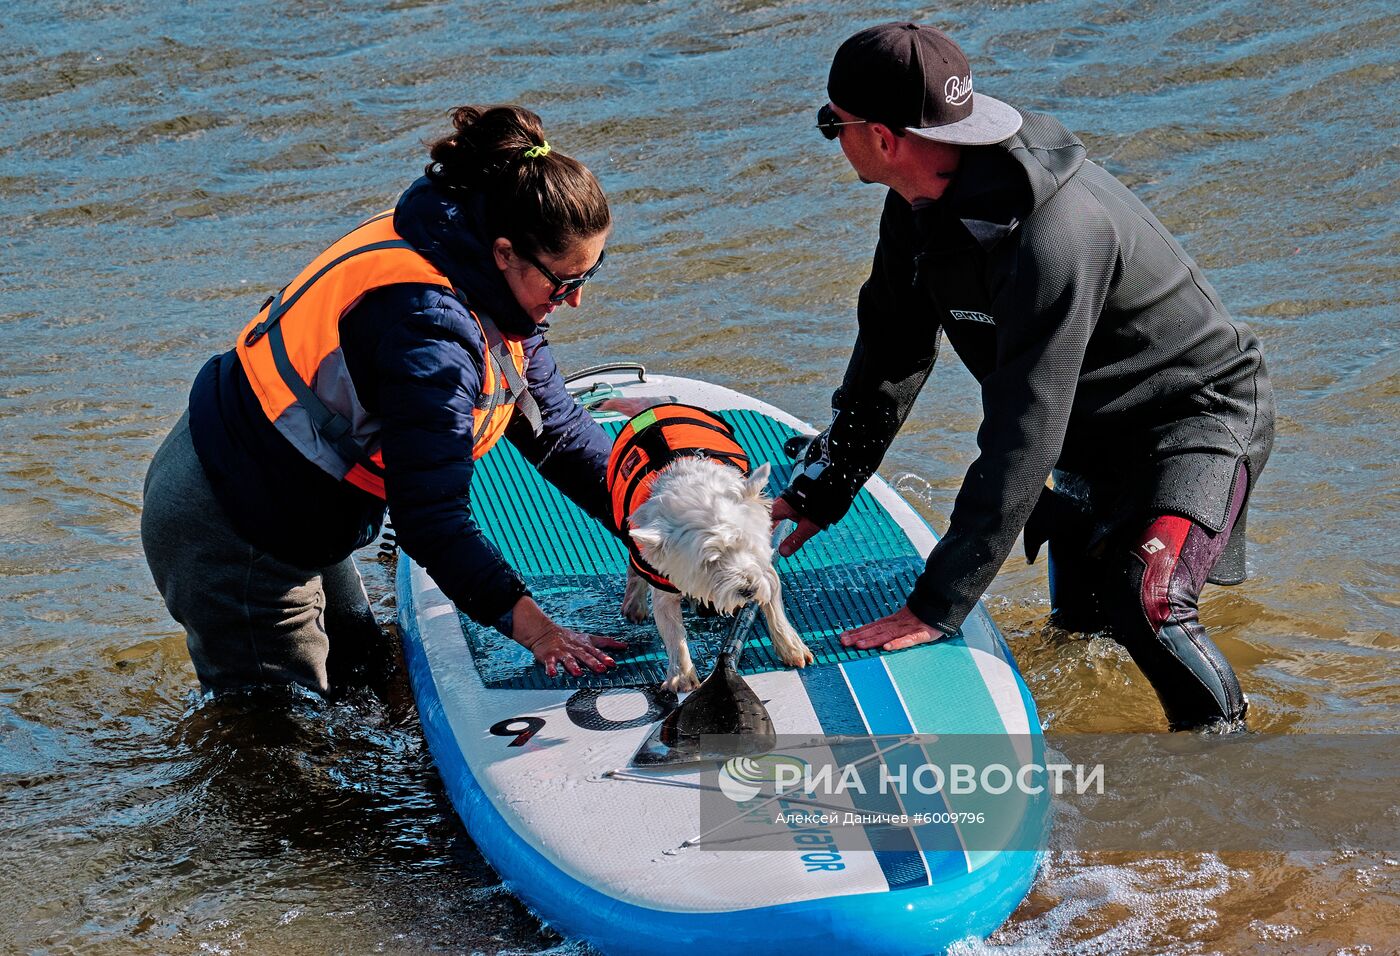 Заплыв на сапсерфах с домашними животными в Санкт-Петербурге